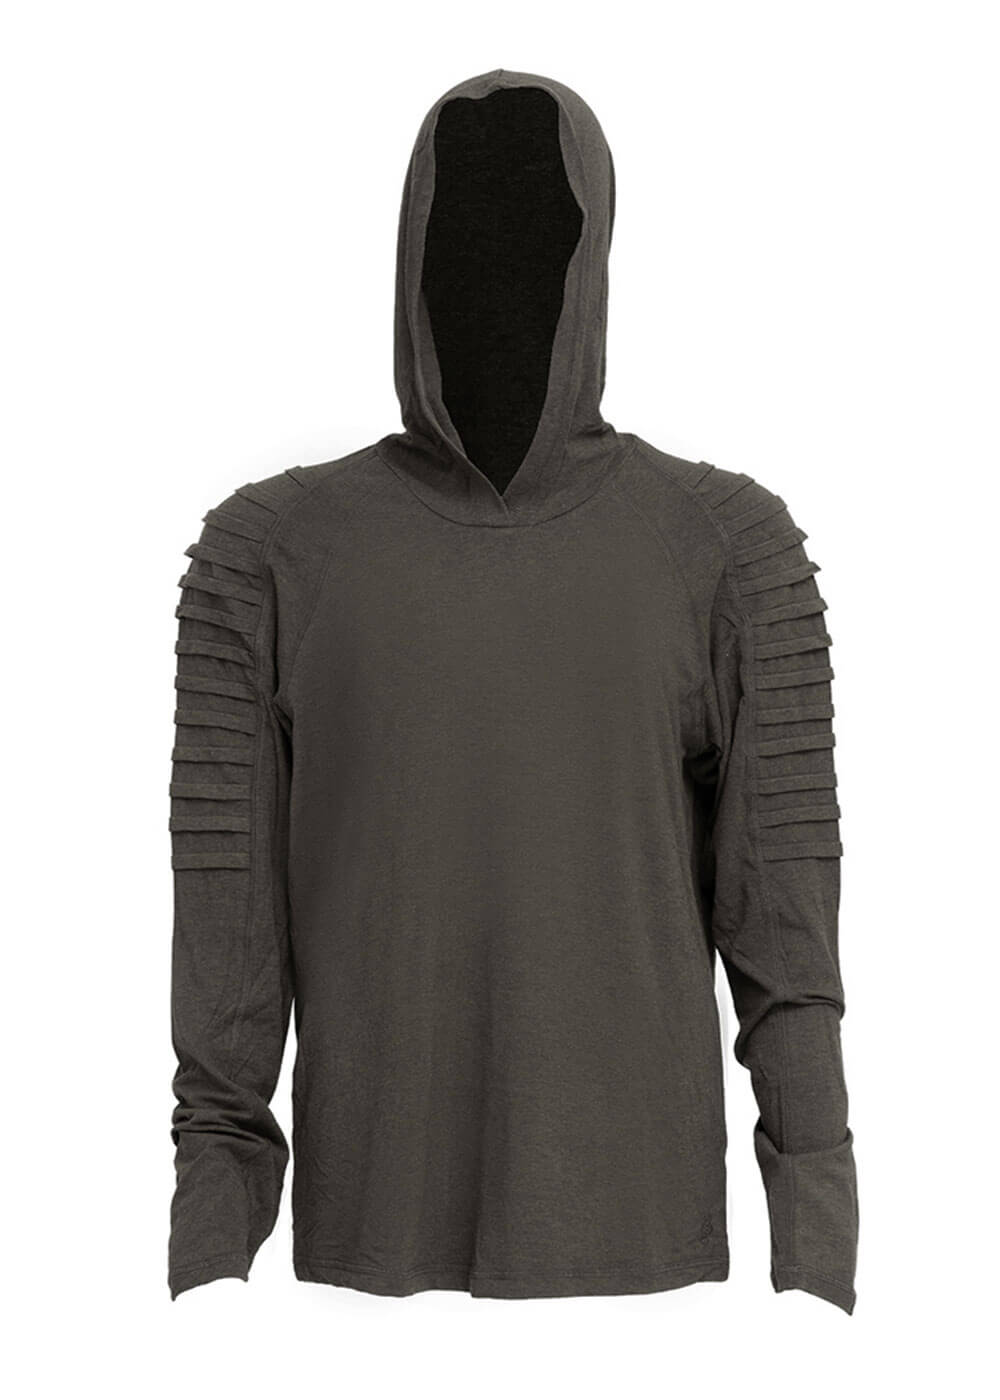 nomads hemp wear defender hoodie